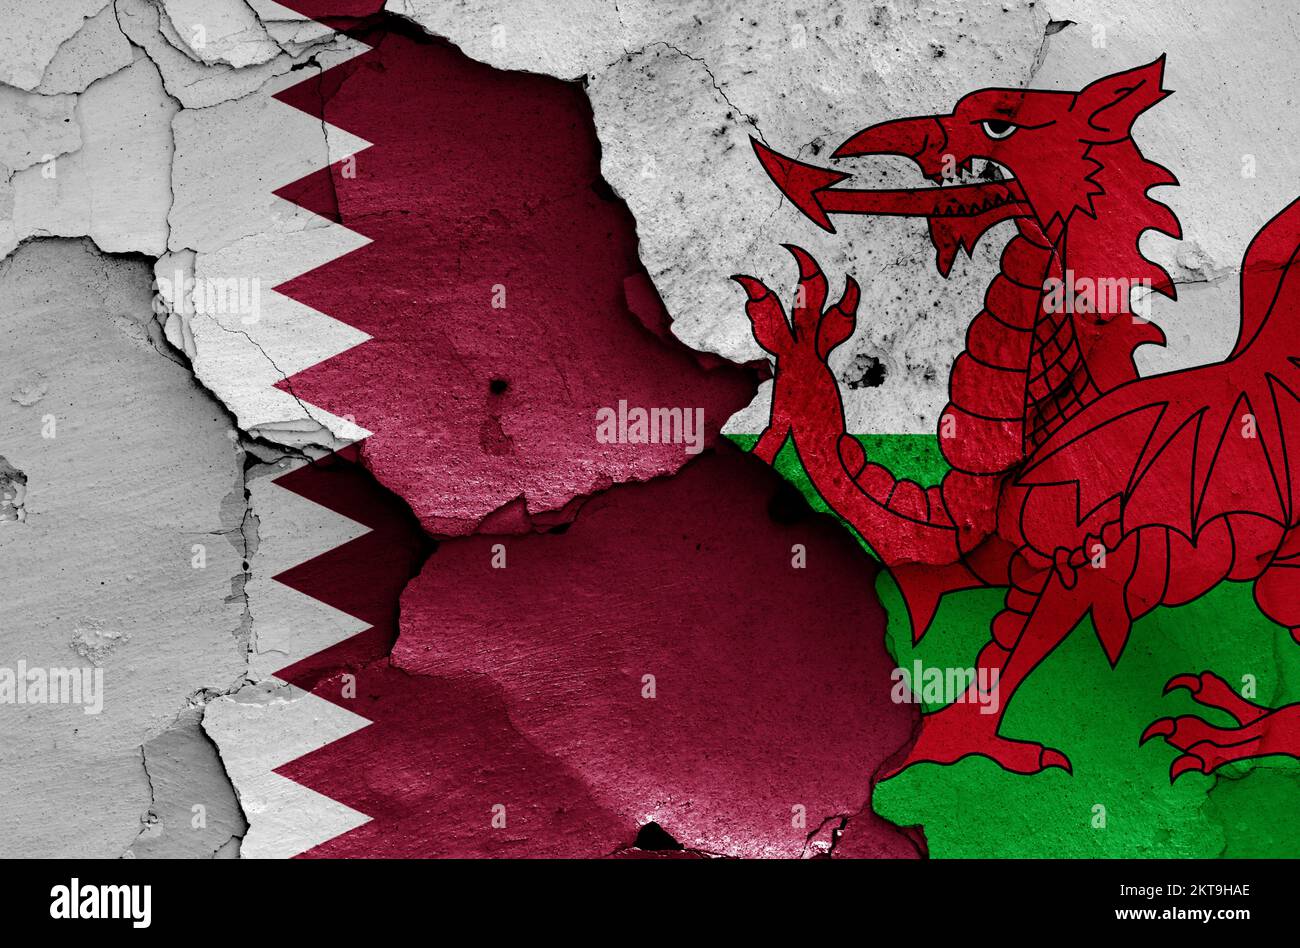 Drapeaux du Qatar et du pays de Galles peints sur un mur fissuré Banque D'Images